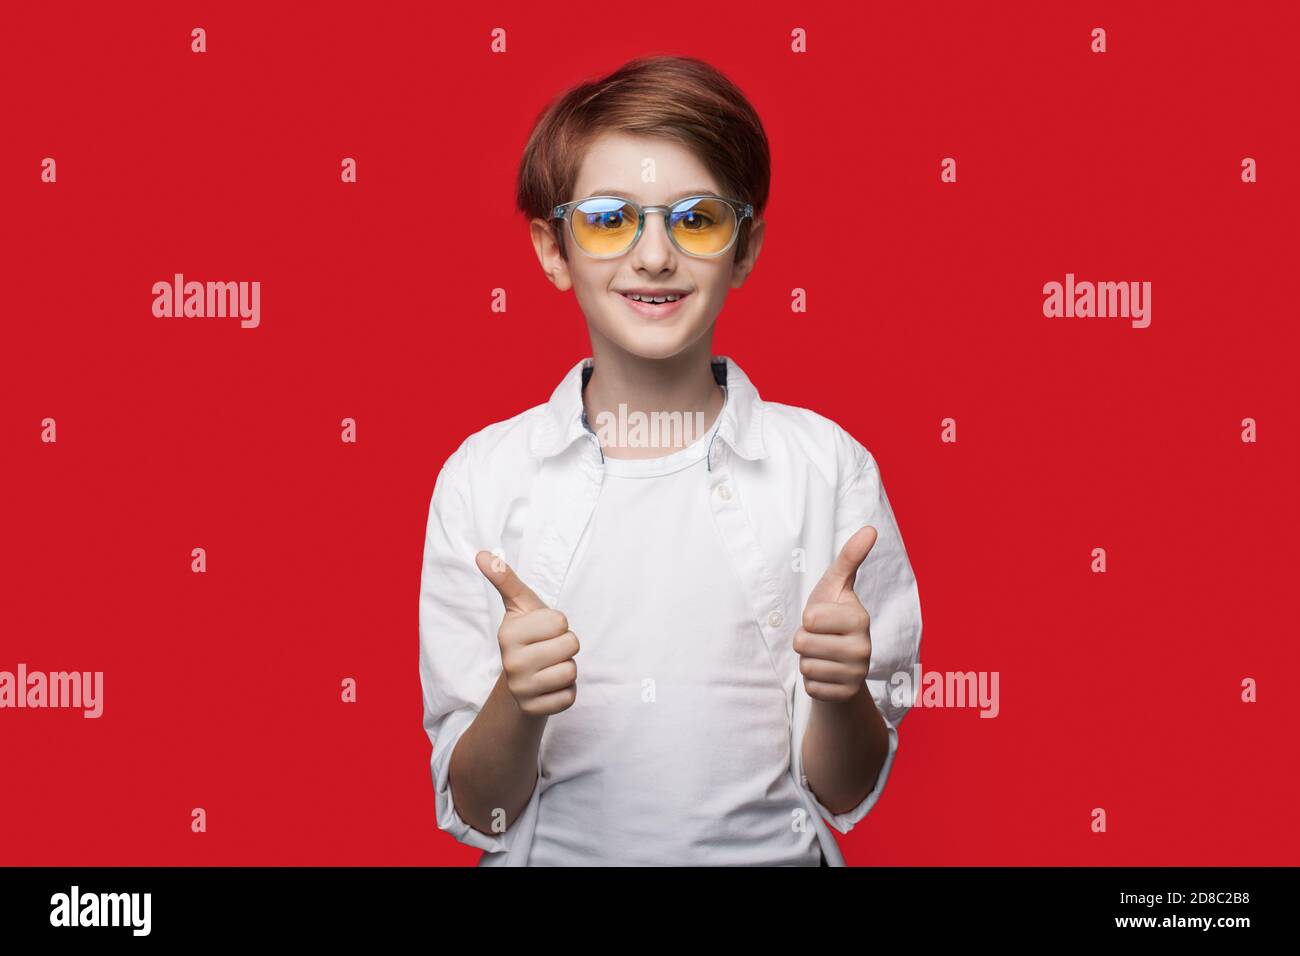 El joven caucásico con gafas está gestando el signo similar en una pared roja del estudio sonriendo a la cámara Foto de stock